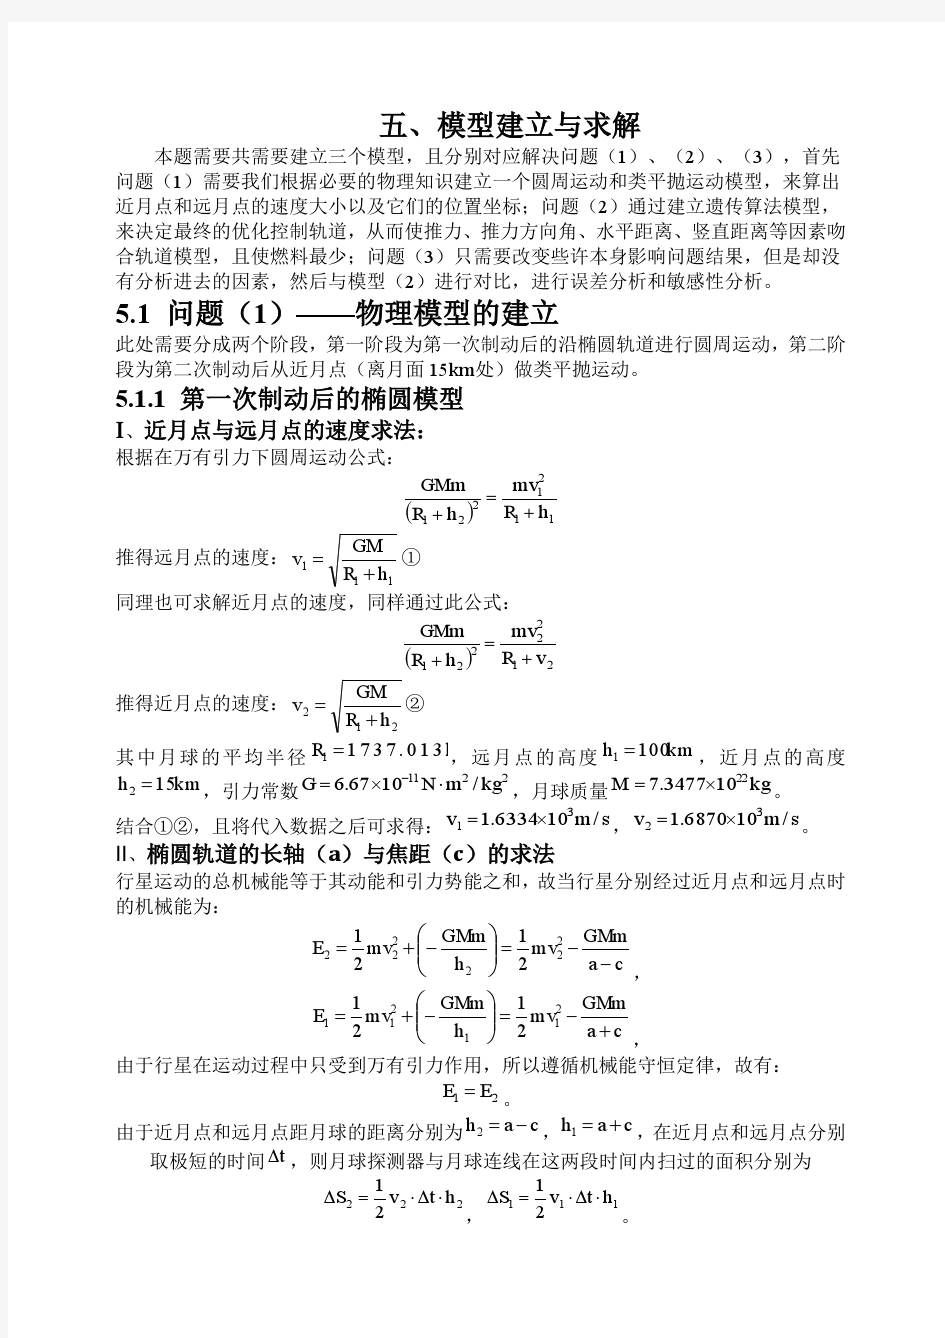 中国矿业大学(北京)数学建模竞赛三等奖论文